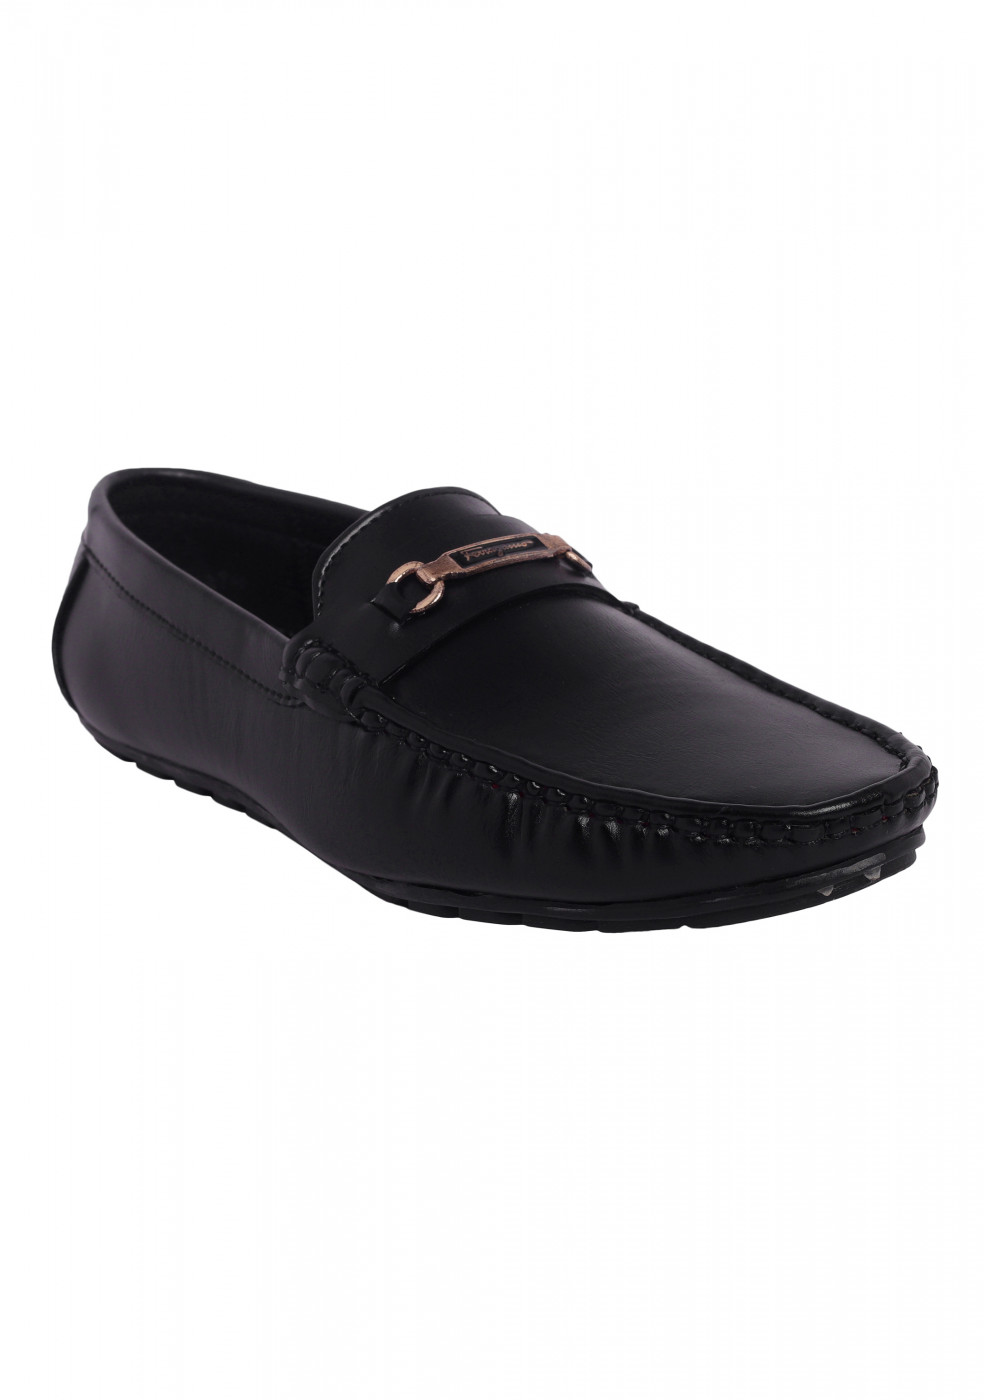 XSTOM Stylish Black Loafers For Men